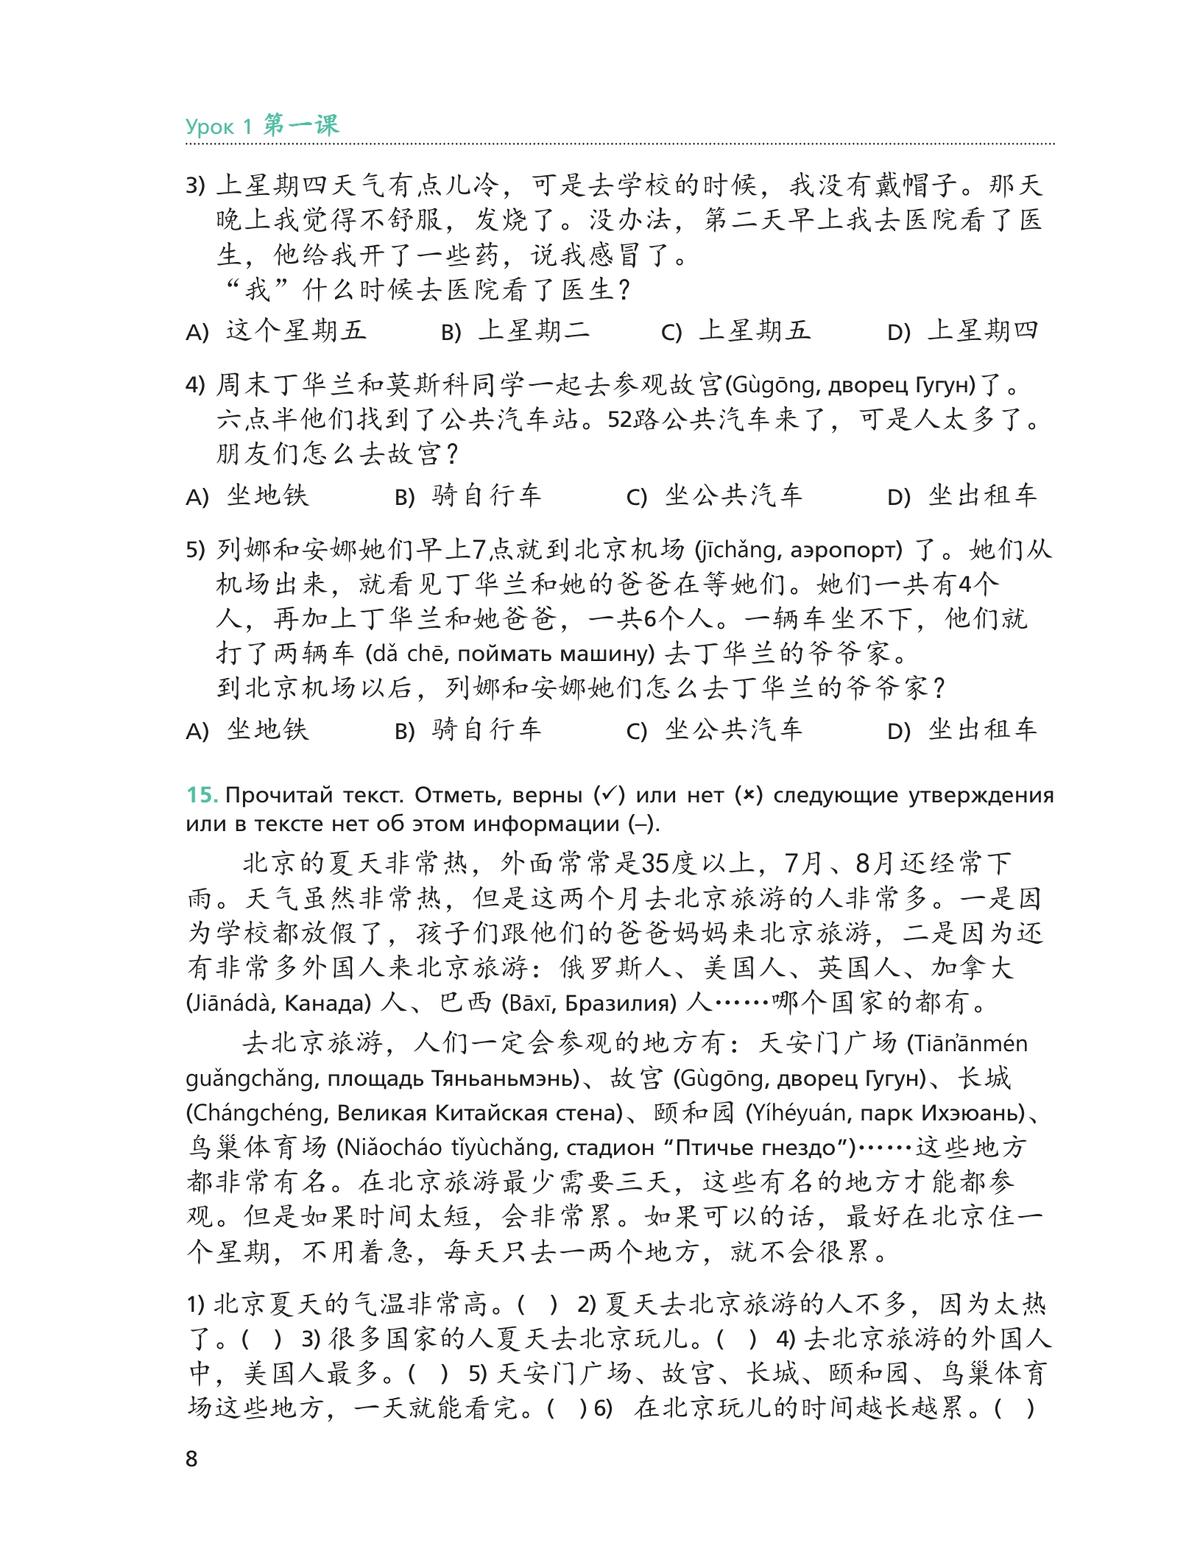 Китайский язык. Второй иностранный язык. Рабочая тетрадь. 8 класс 4